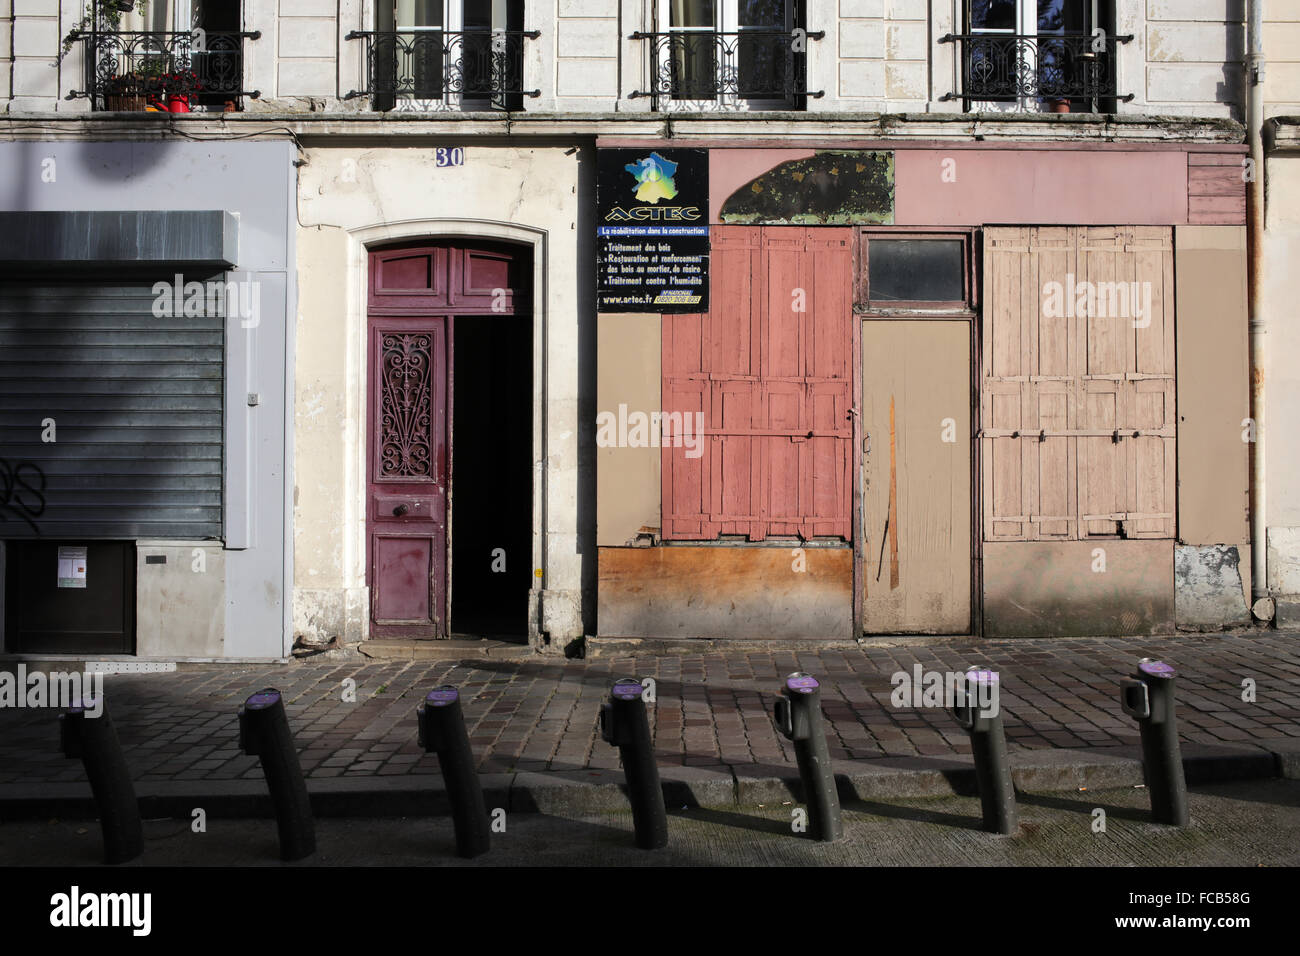 30 rue Piat - Belleville - 20th arrondissement - Paris - France Stock Photo